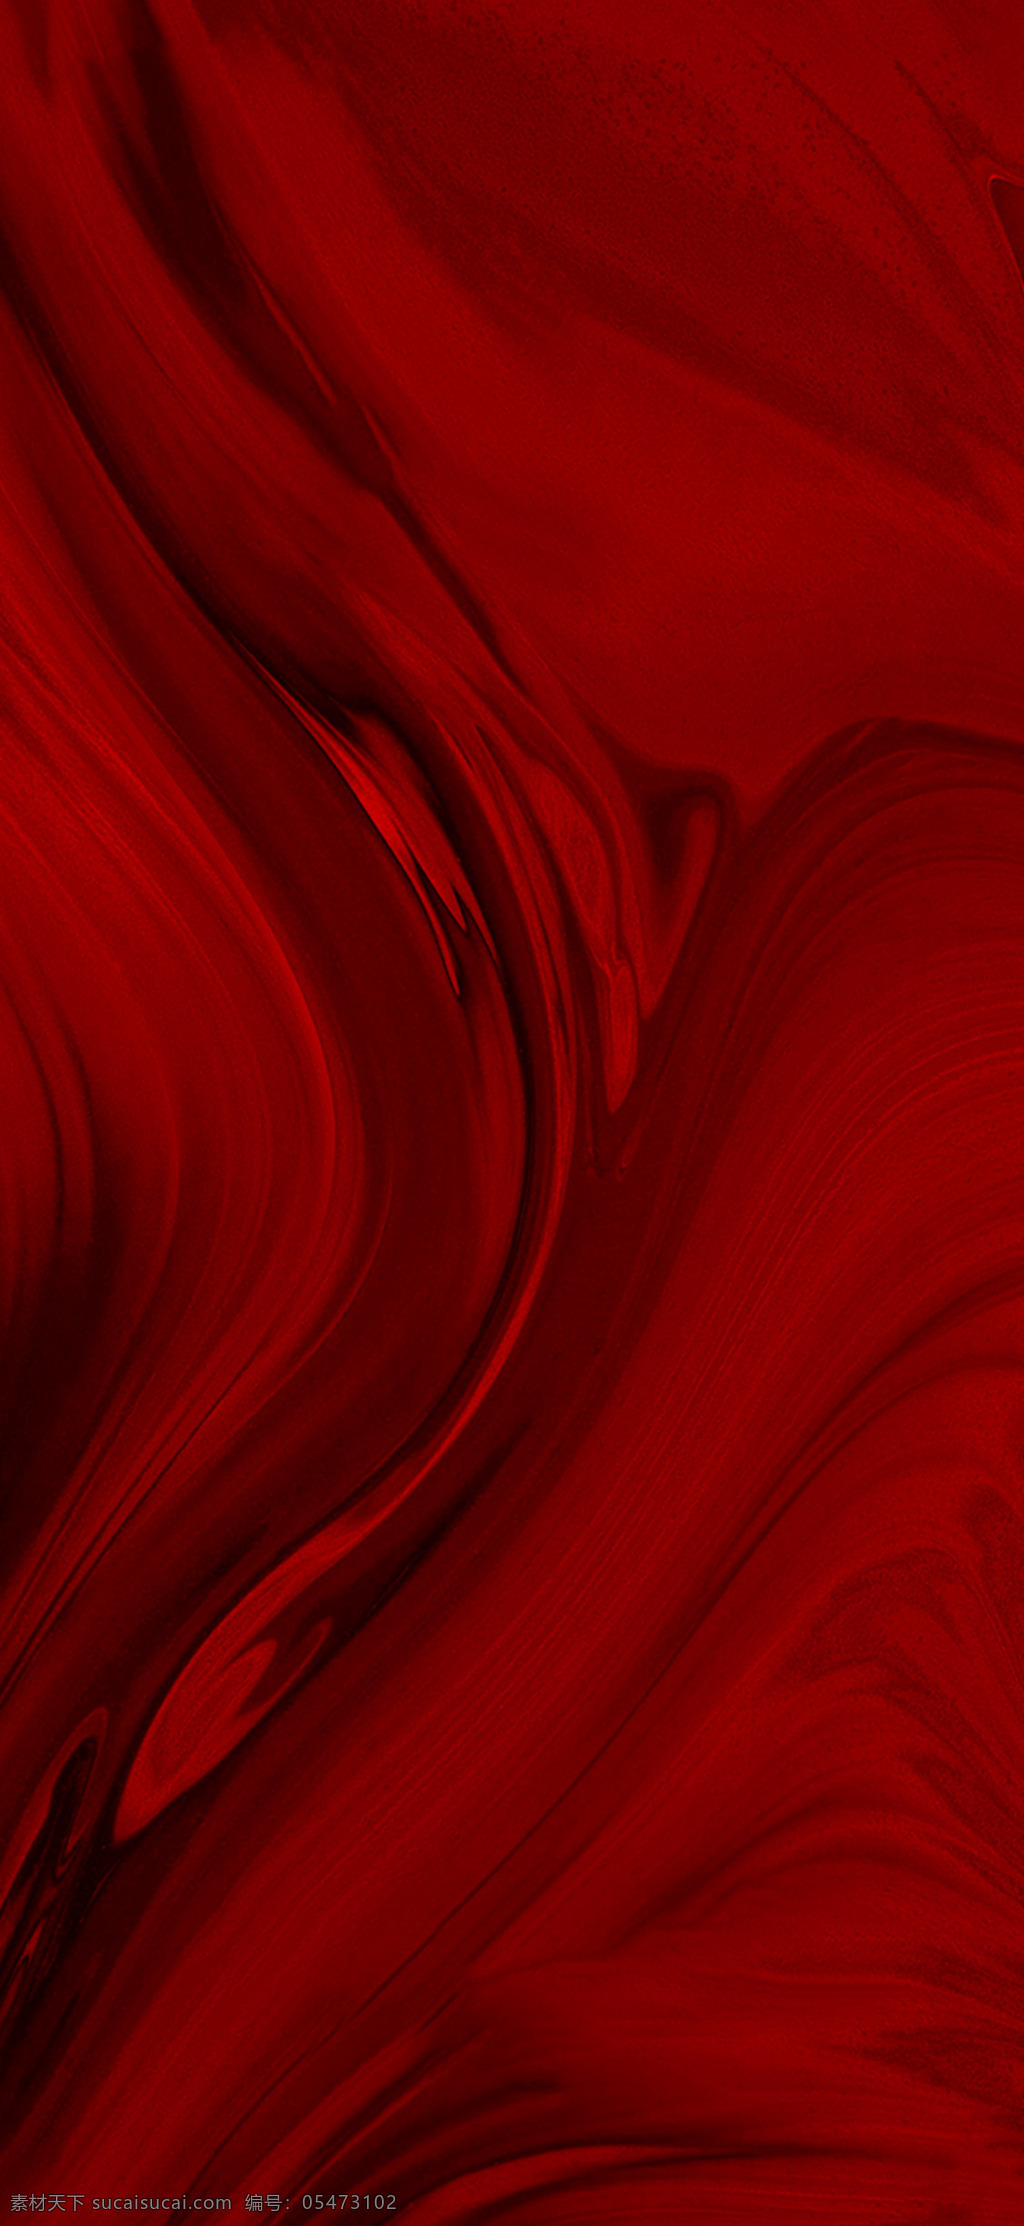 高级 红色 质感 背景图片 抽象 水墨 肌理 地产 图案 炫酷 大气 简约 背景 红 底纹边框 抽象底纹